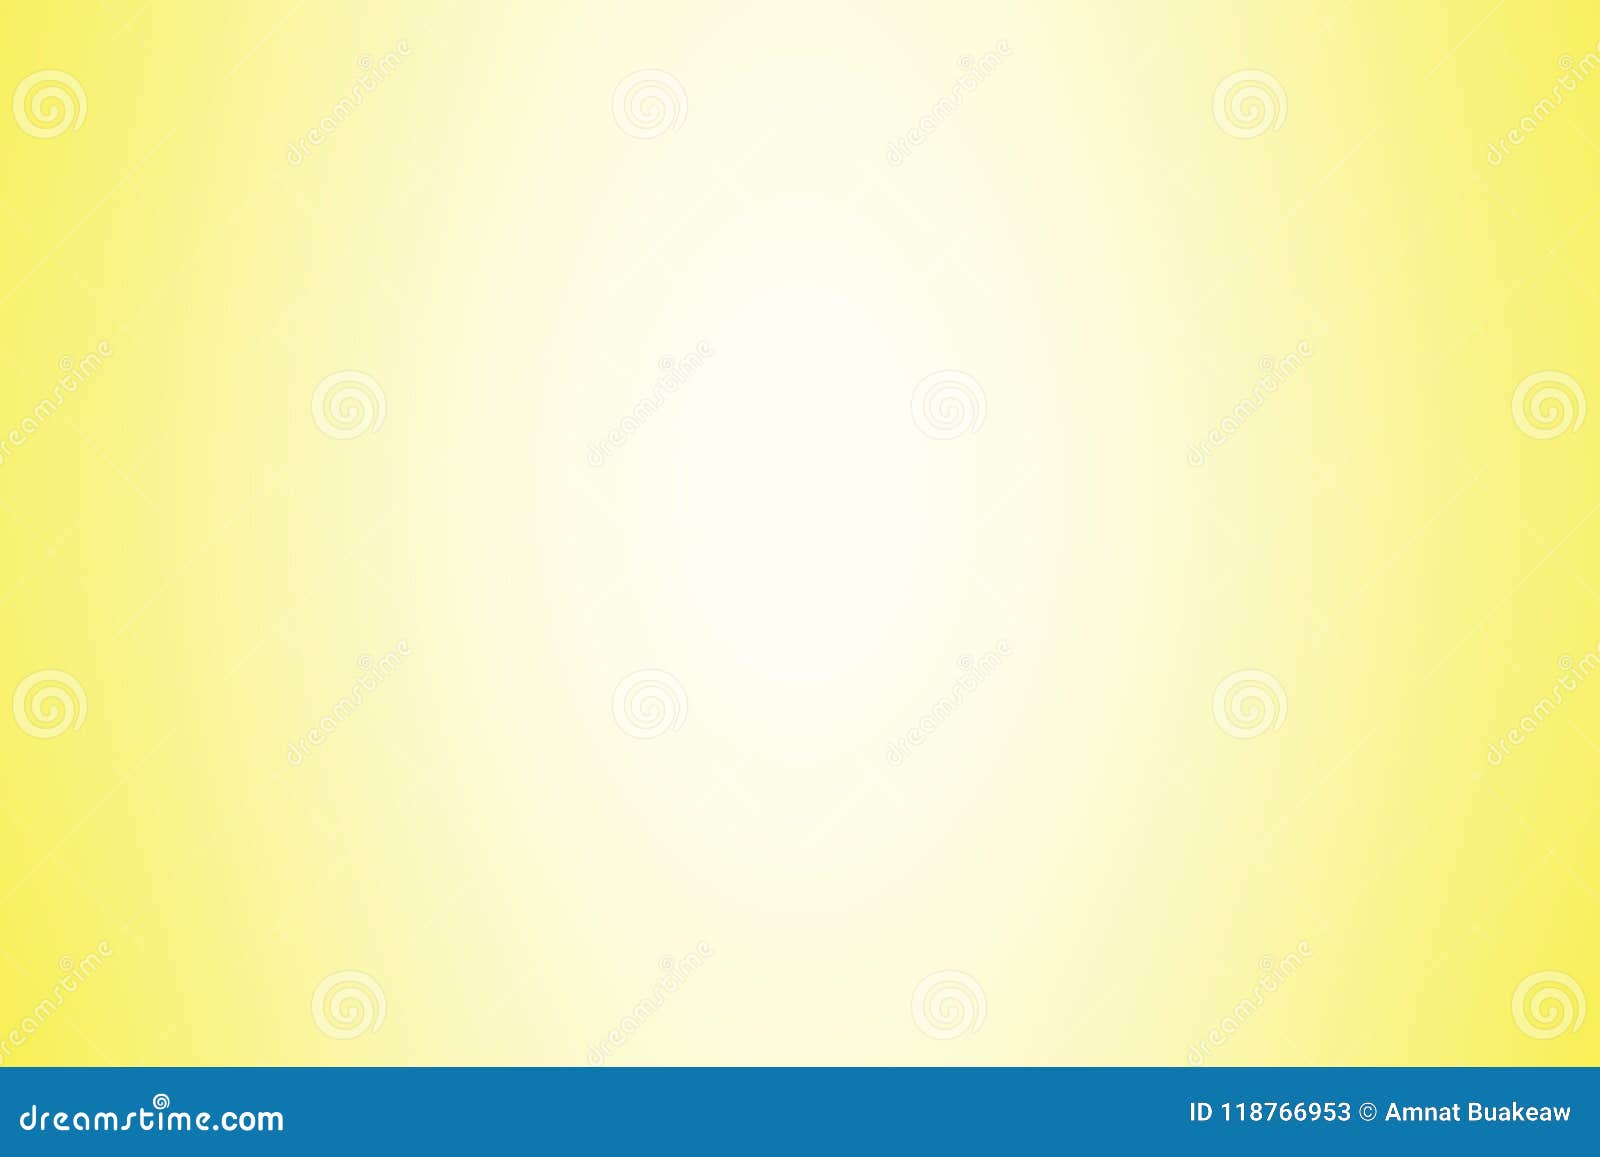 Màu nền Gradient vàng mềm ánh sáng - Màu nền Gradient vàng mềm ánh sáng mang đến cho bức ảnh một không gian vô cùng ấm áp và tươi vui. Đây là lựa chọn hoàn hảo cho những ai thích màu sắc nhẹ nhàng và tinh tế. Hãy cùng chiêm ngưỡng hình ảnh liên quan đến keyword này để tận hưởng cảm giác êm dịu đó.